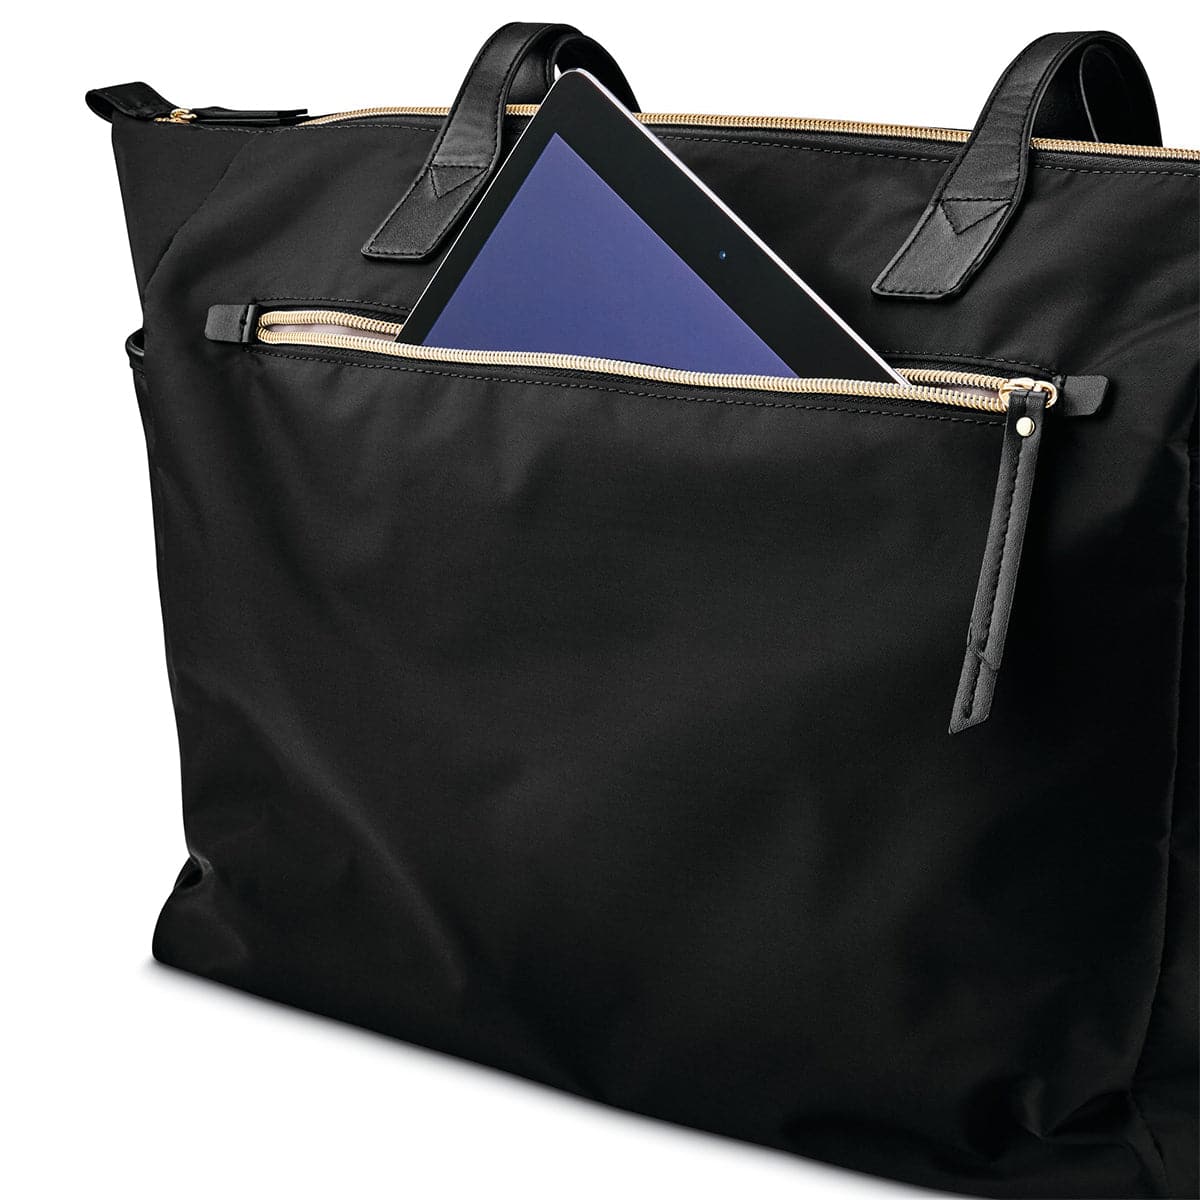 Samsonite Mobile Solution Deluxe Carryall Bag